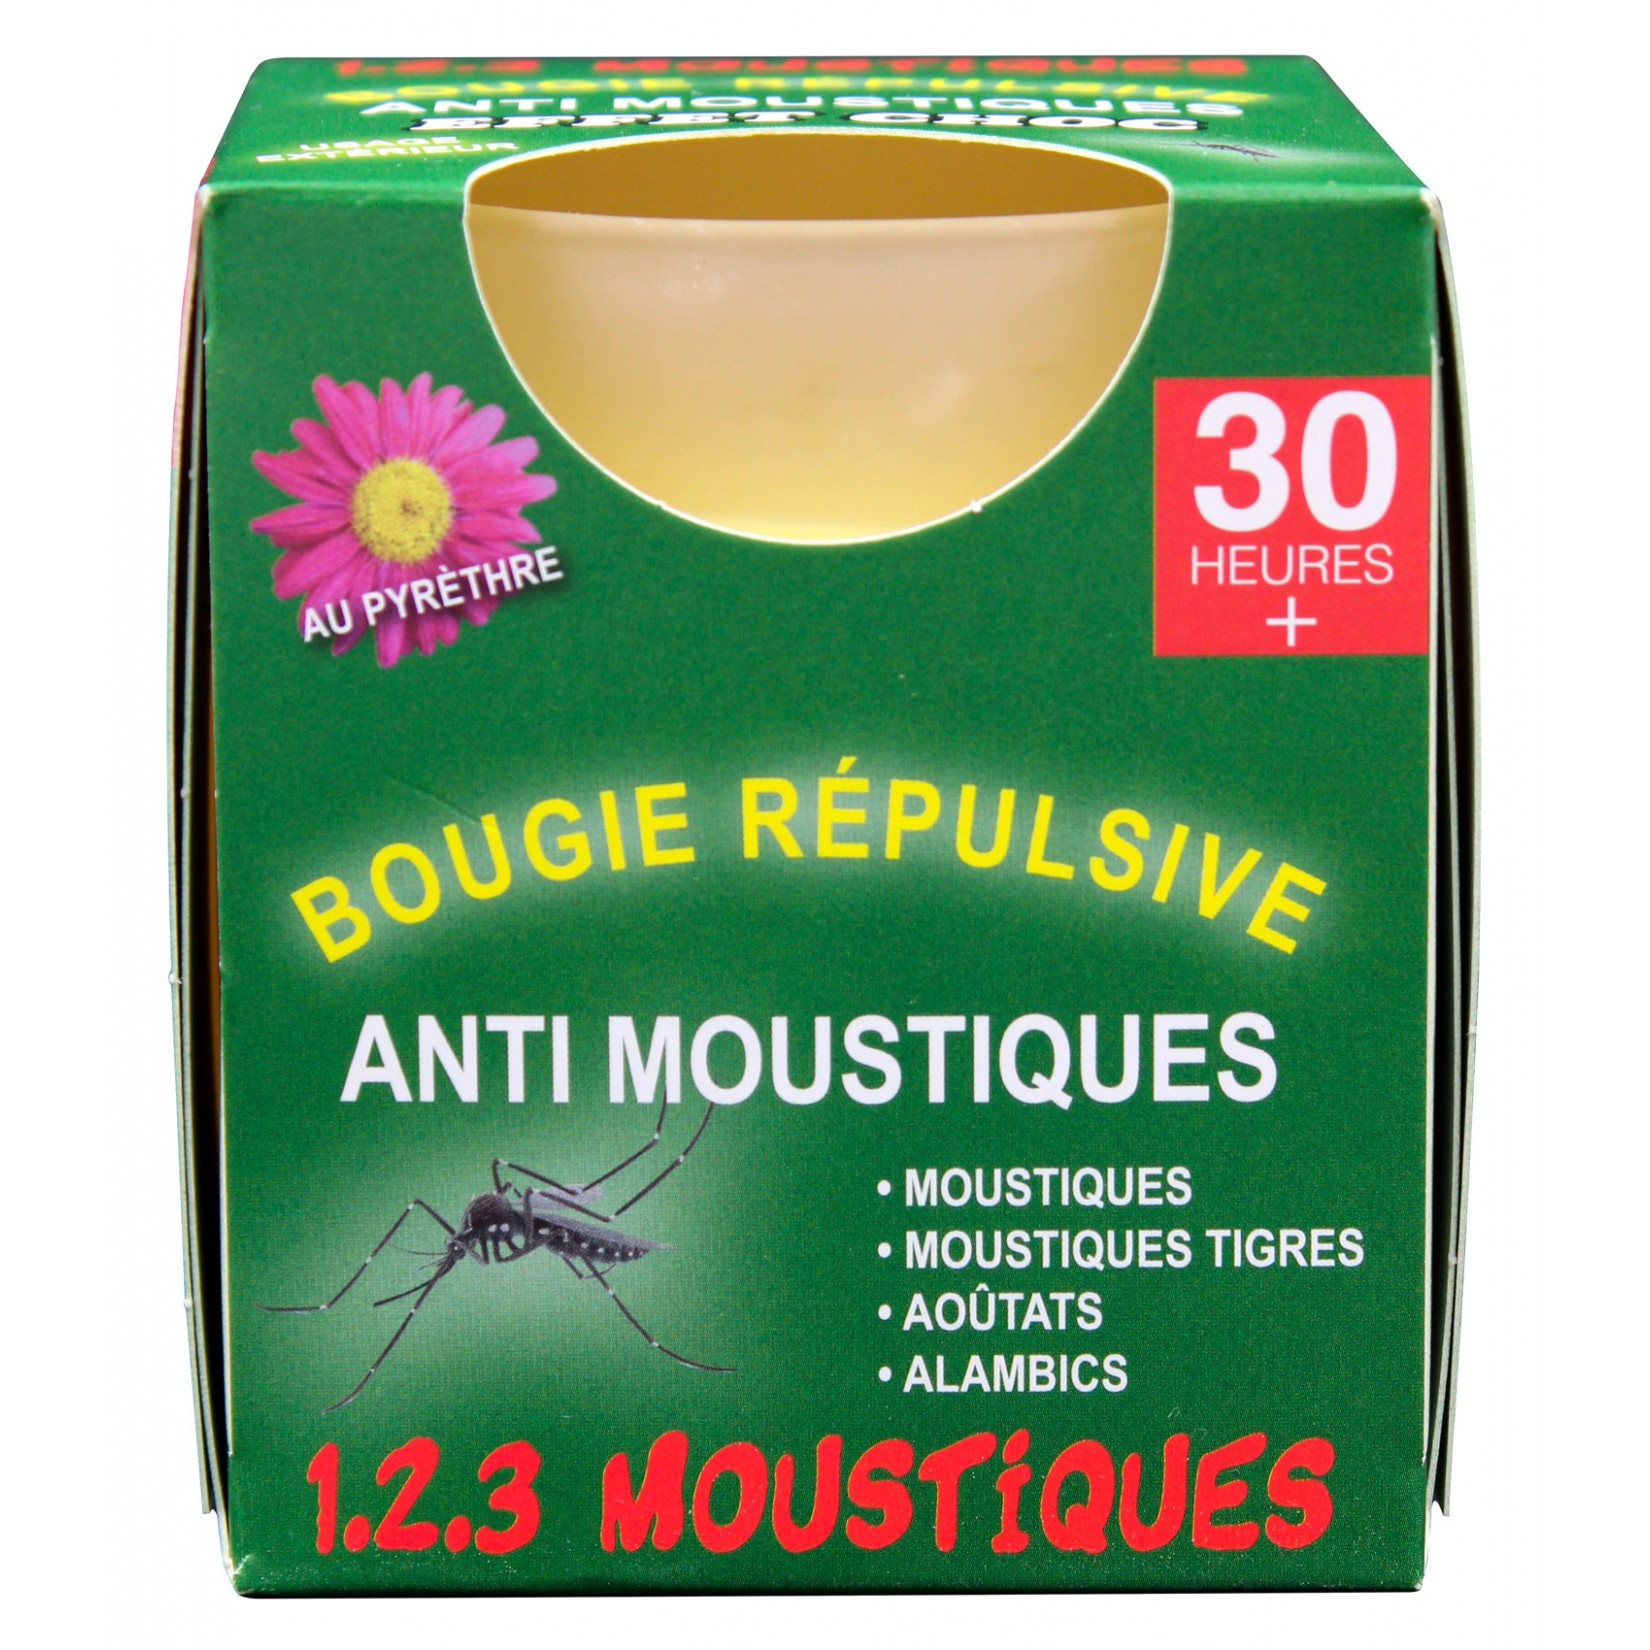 123 Moustiques Bougies répulsive anti-moustiques au Pyrèthre 30h | Insecticide Antinuisible Qualité Professionnelle